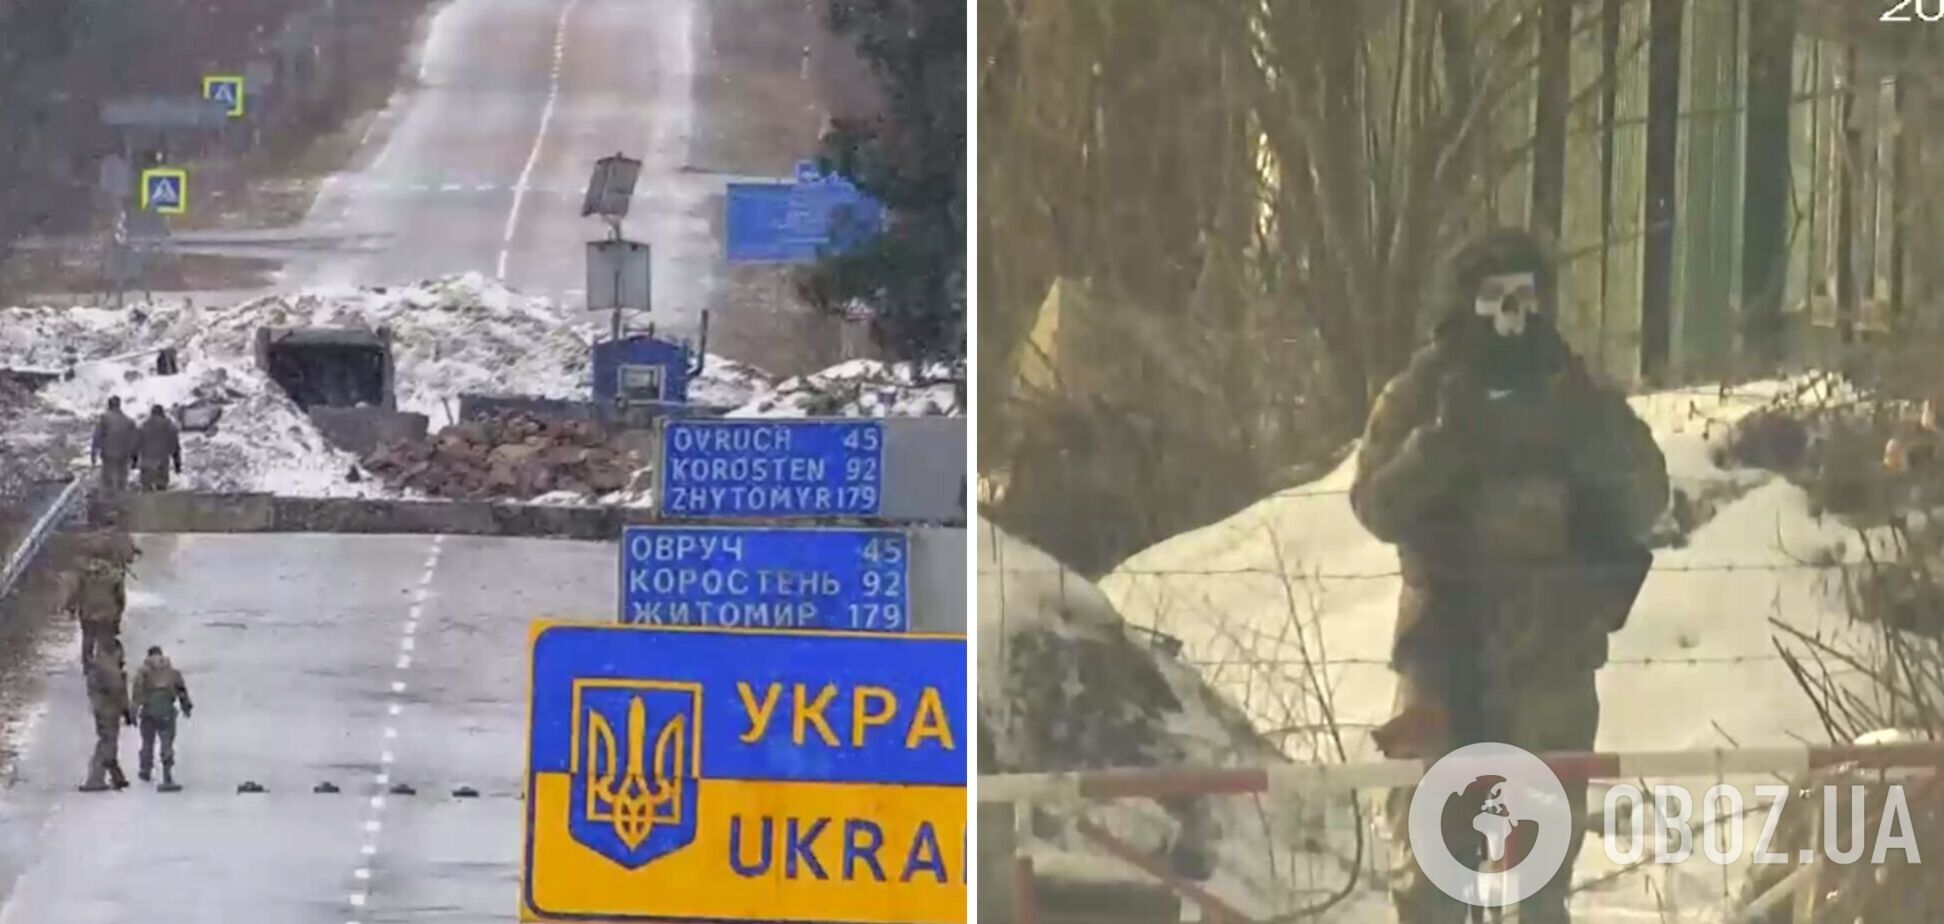 Украинские пограничники продолжают троллить беларуских коллег: те снова жалуются на 'послание'. Видео